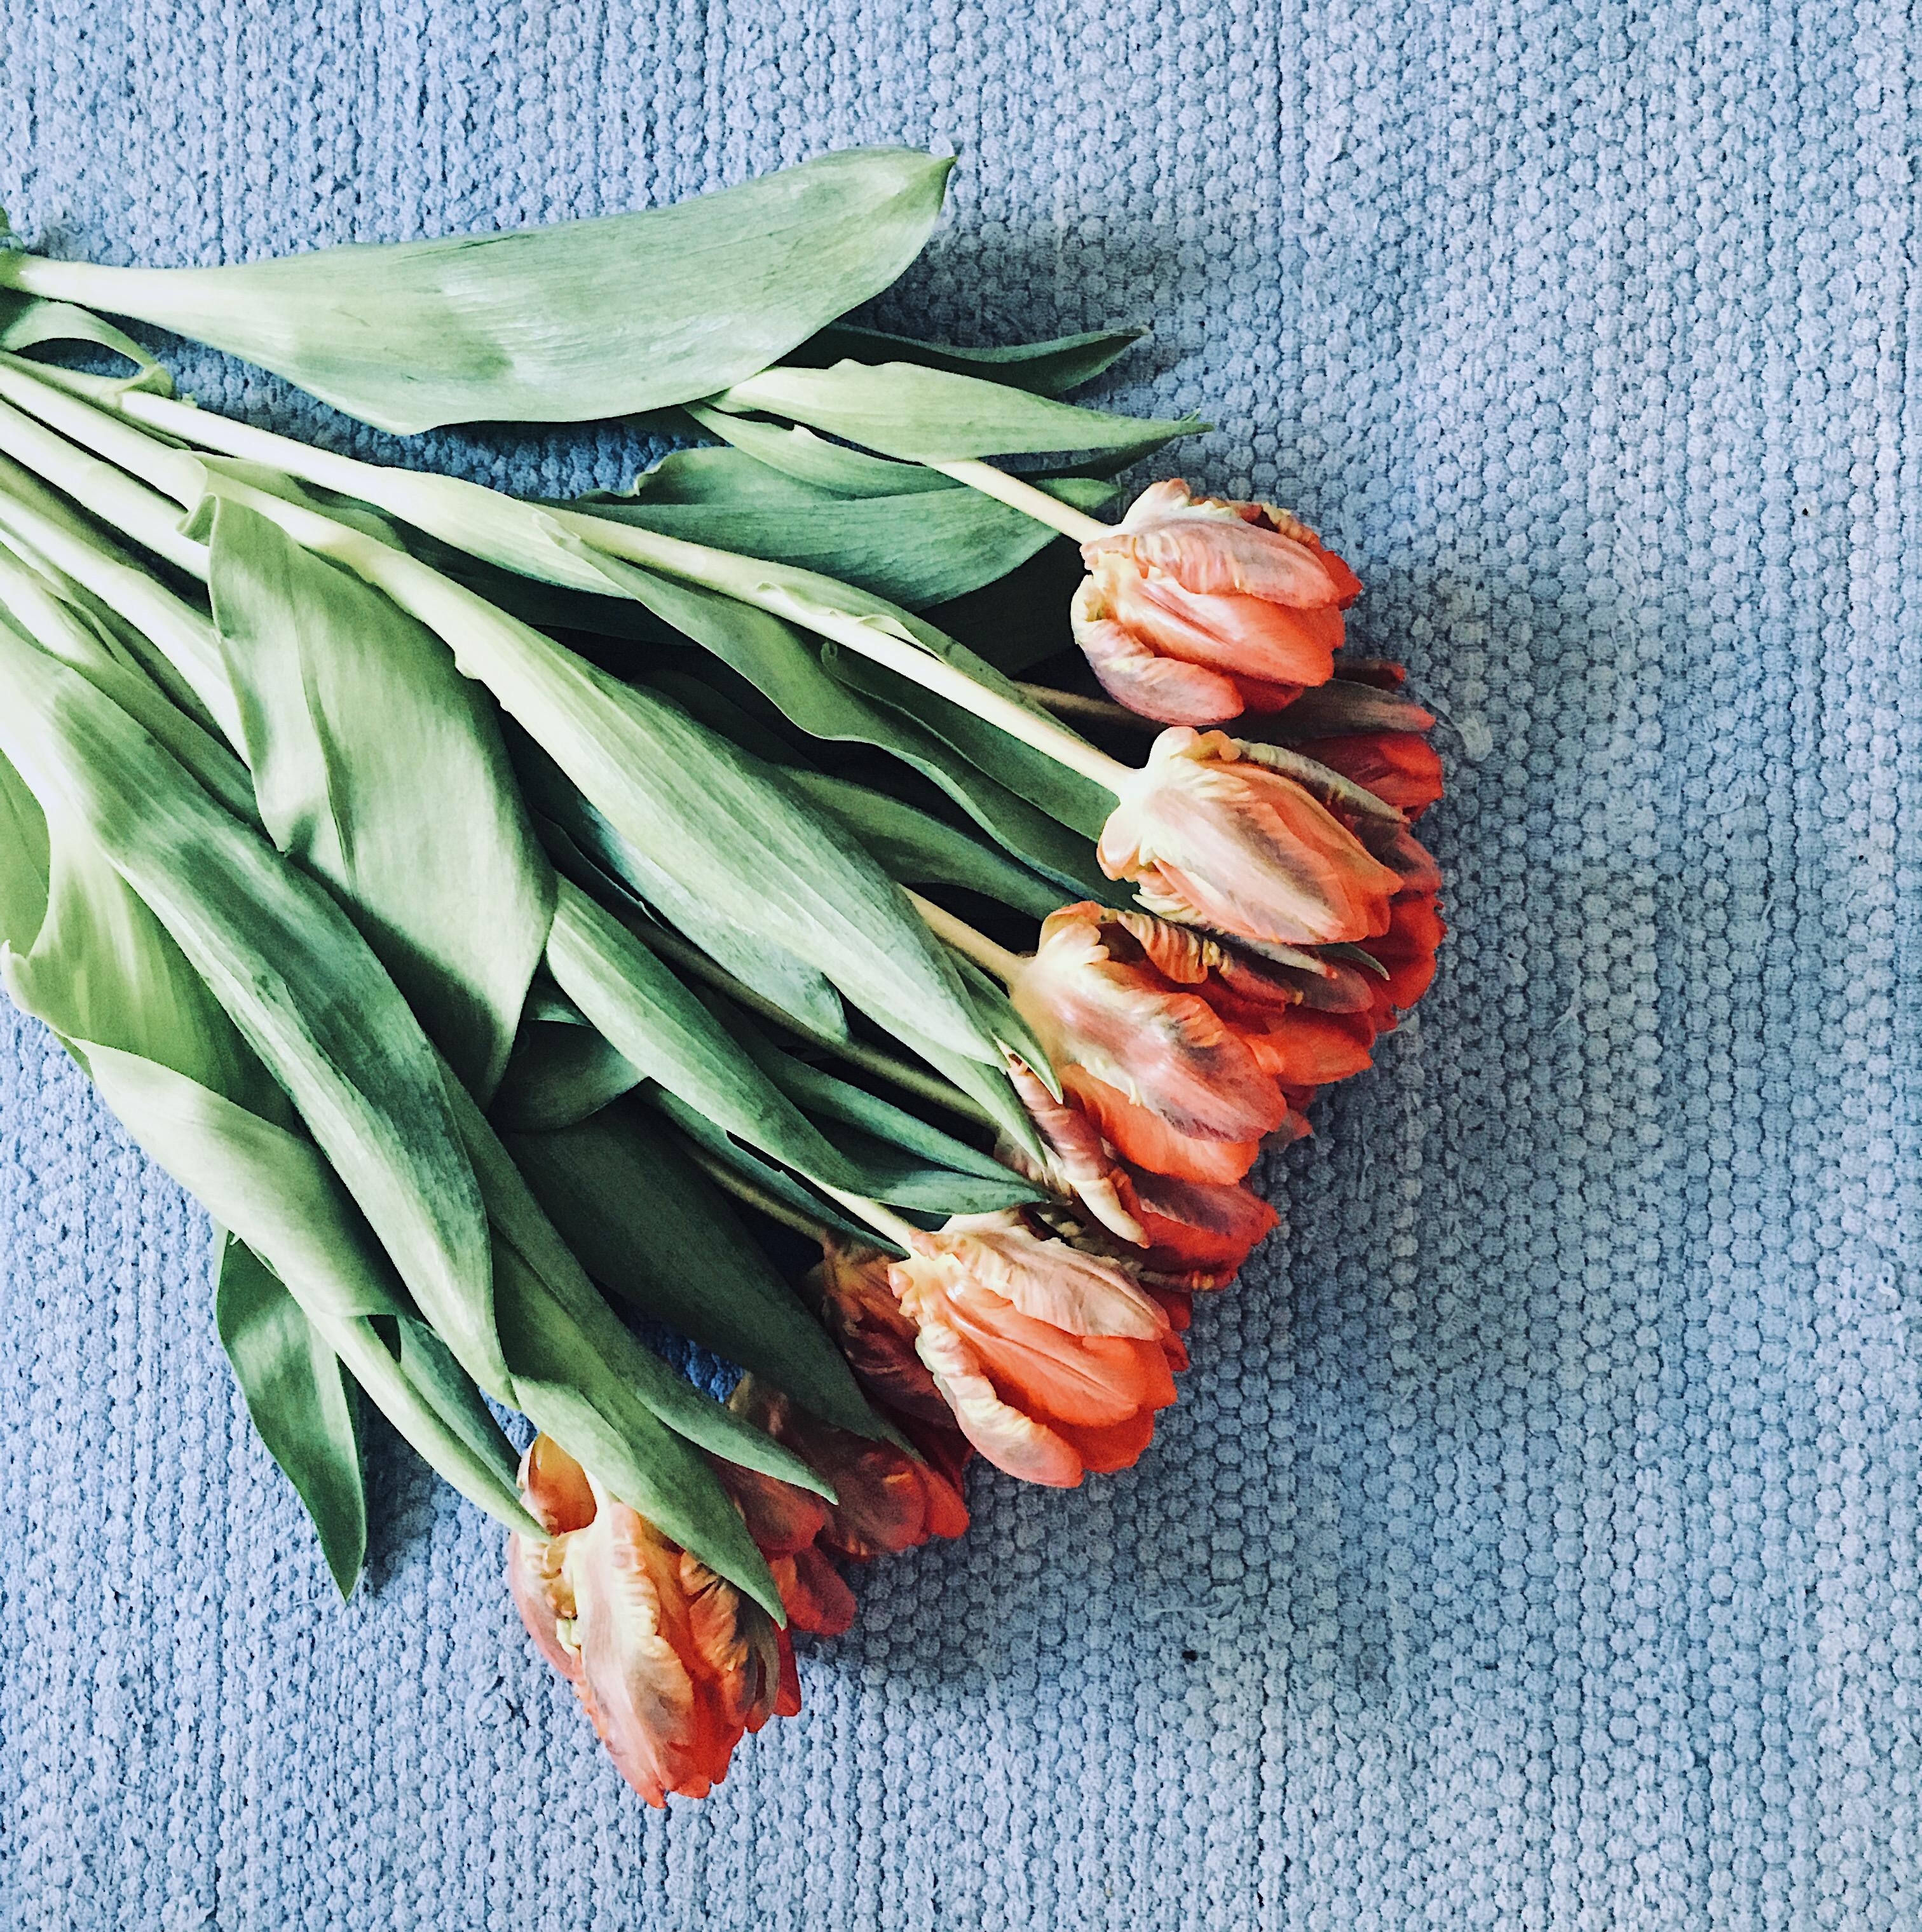 Einfach liegen bleiben wie die Schönheiten 😅 das wär‘s jetzt.
#Tulpen #Blumen #Flowers